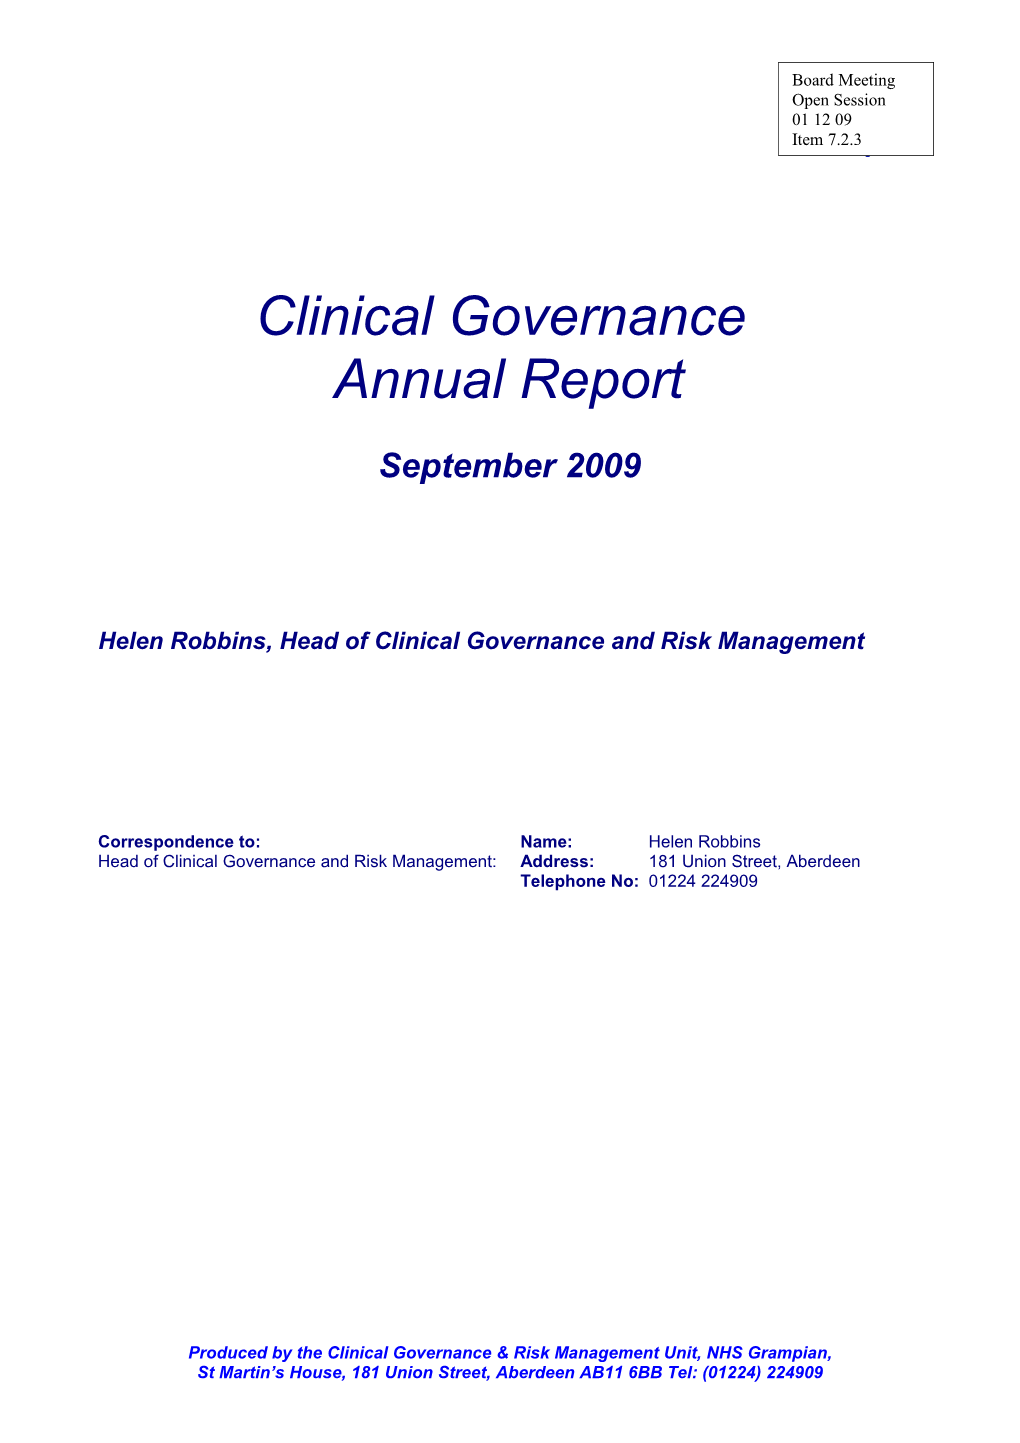 Item 7.2.3 for 1 Dec 09 CGC Annual Report